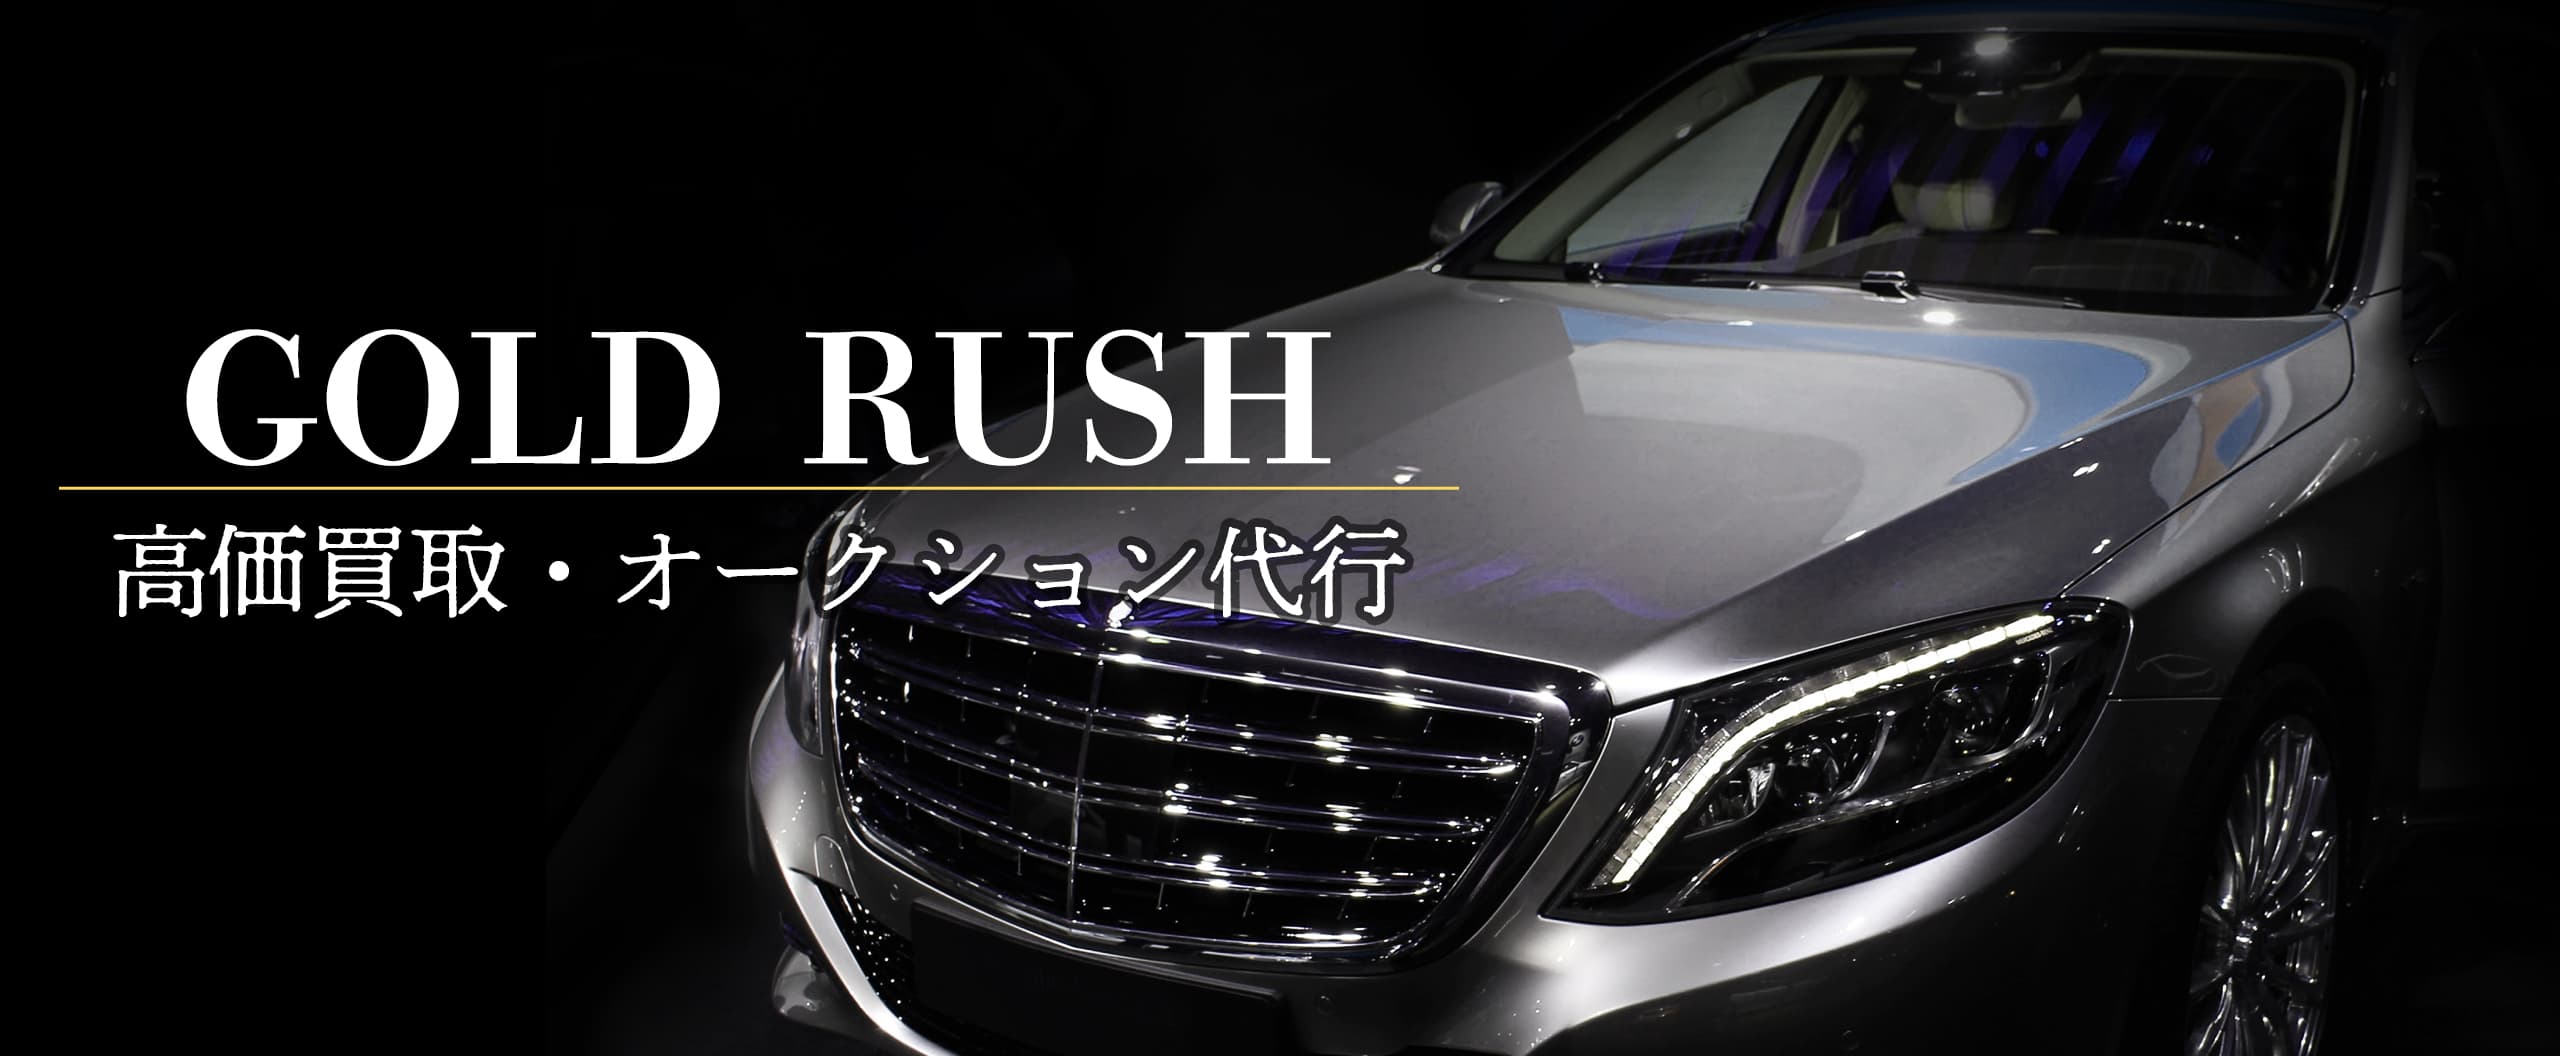 GOLD RUSH｜中古車 高価 買取・オークション代行(ベンツ・ポルシェ・セルシオ・BMW等) 東京 赤坂